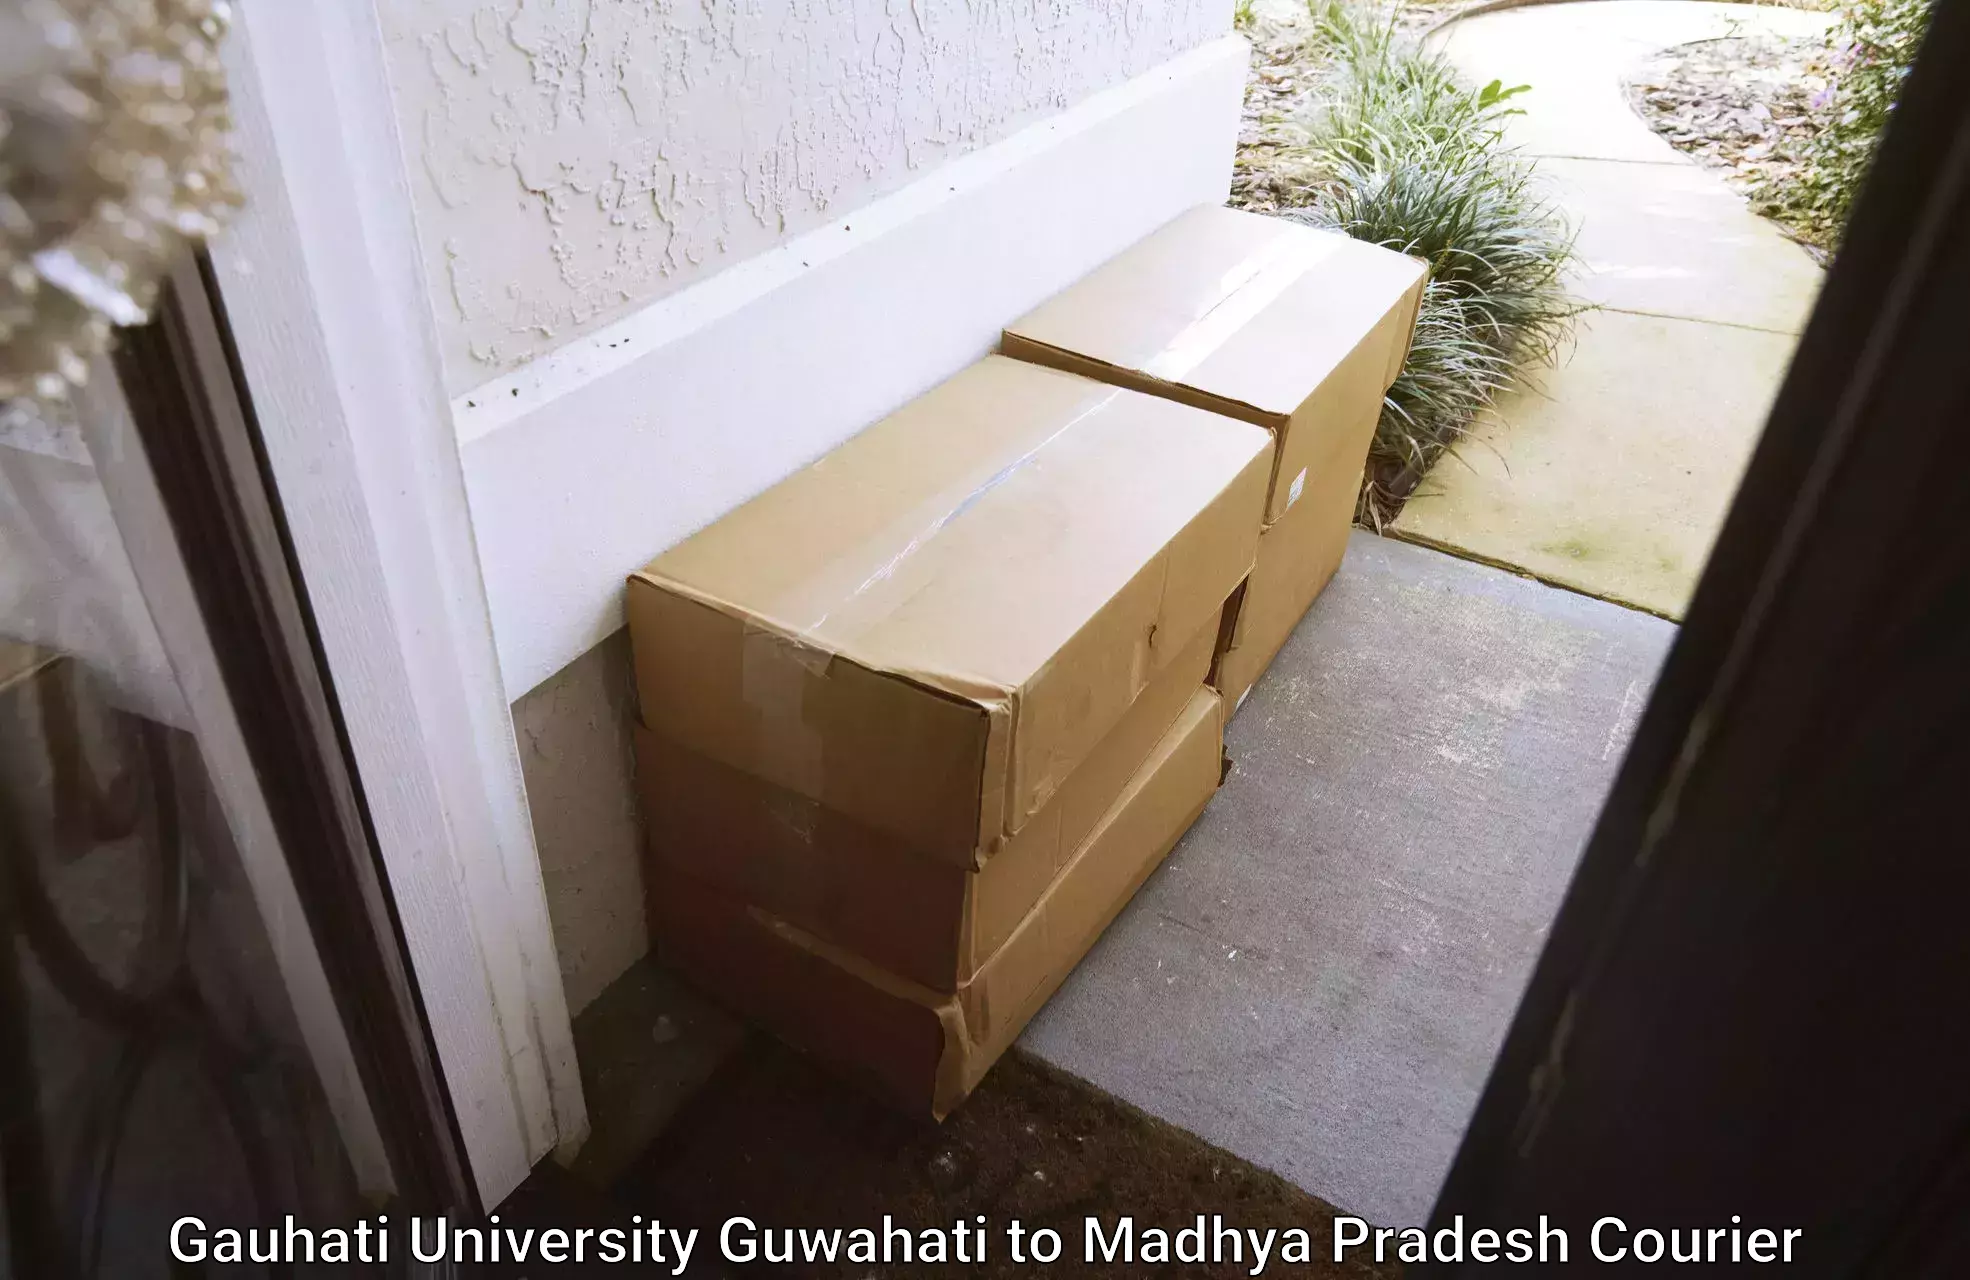 Multi-package shipping in Gauhati University Guwahati to Waraseoni